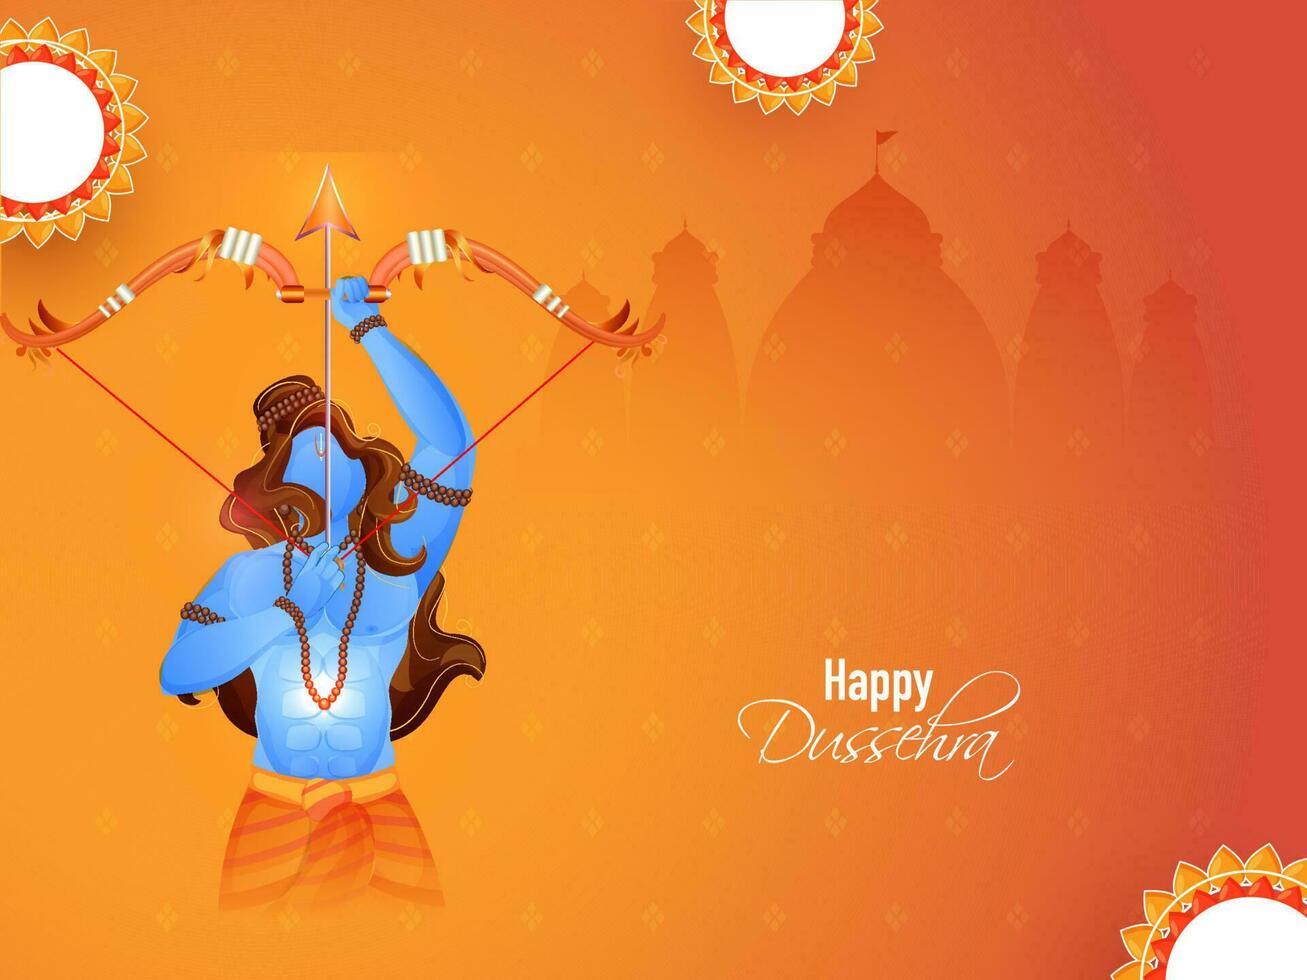 contento dussehra celebracion concepto con hindú mitología señor rama tomando un objetivo y vacío mandala marco en naranja silueta ayodhya o templo antecedentes. vector